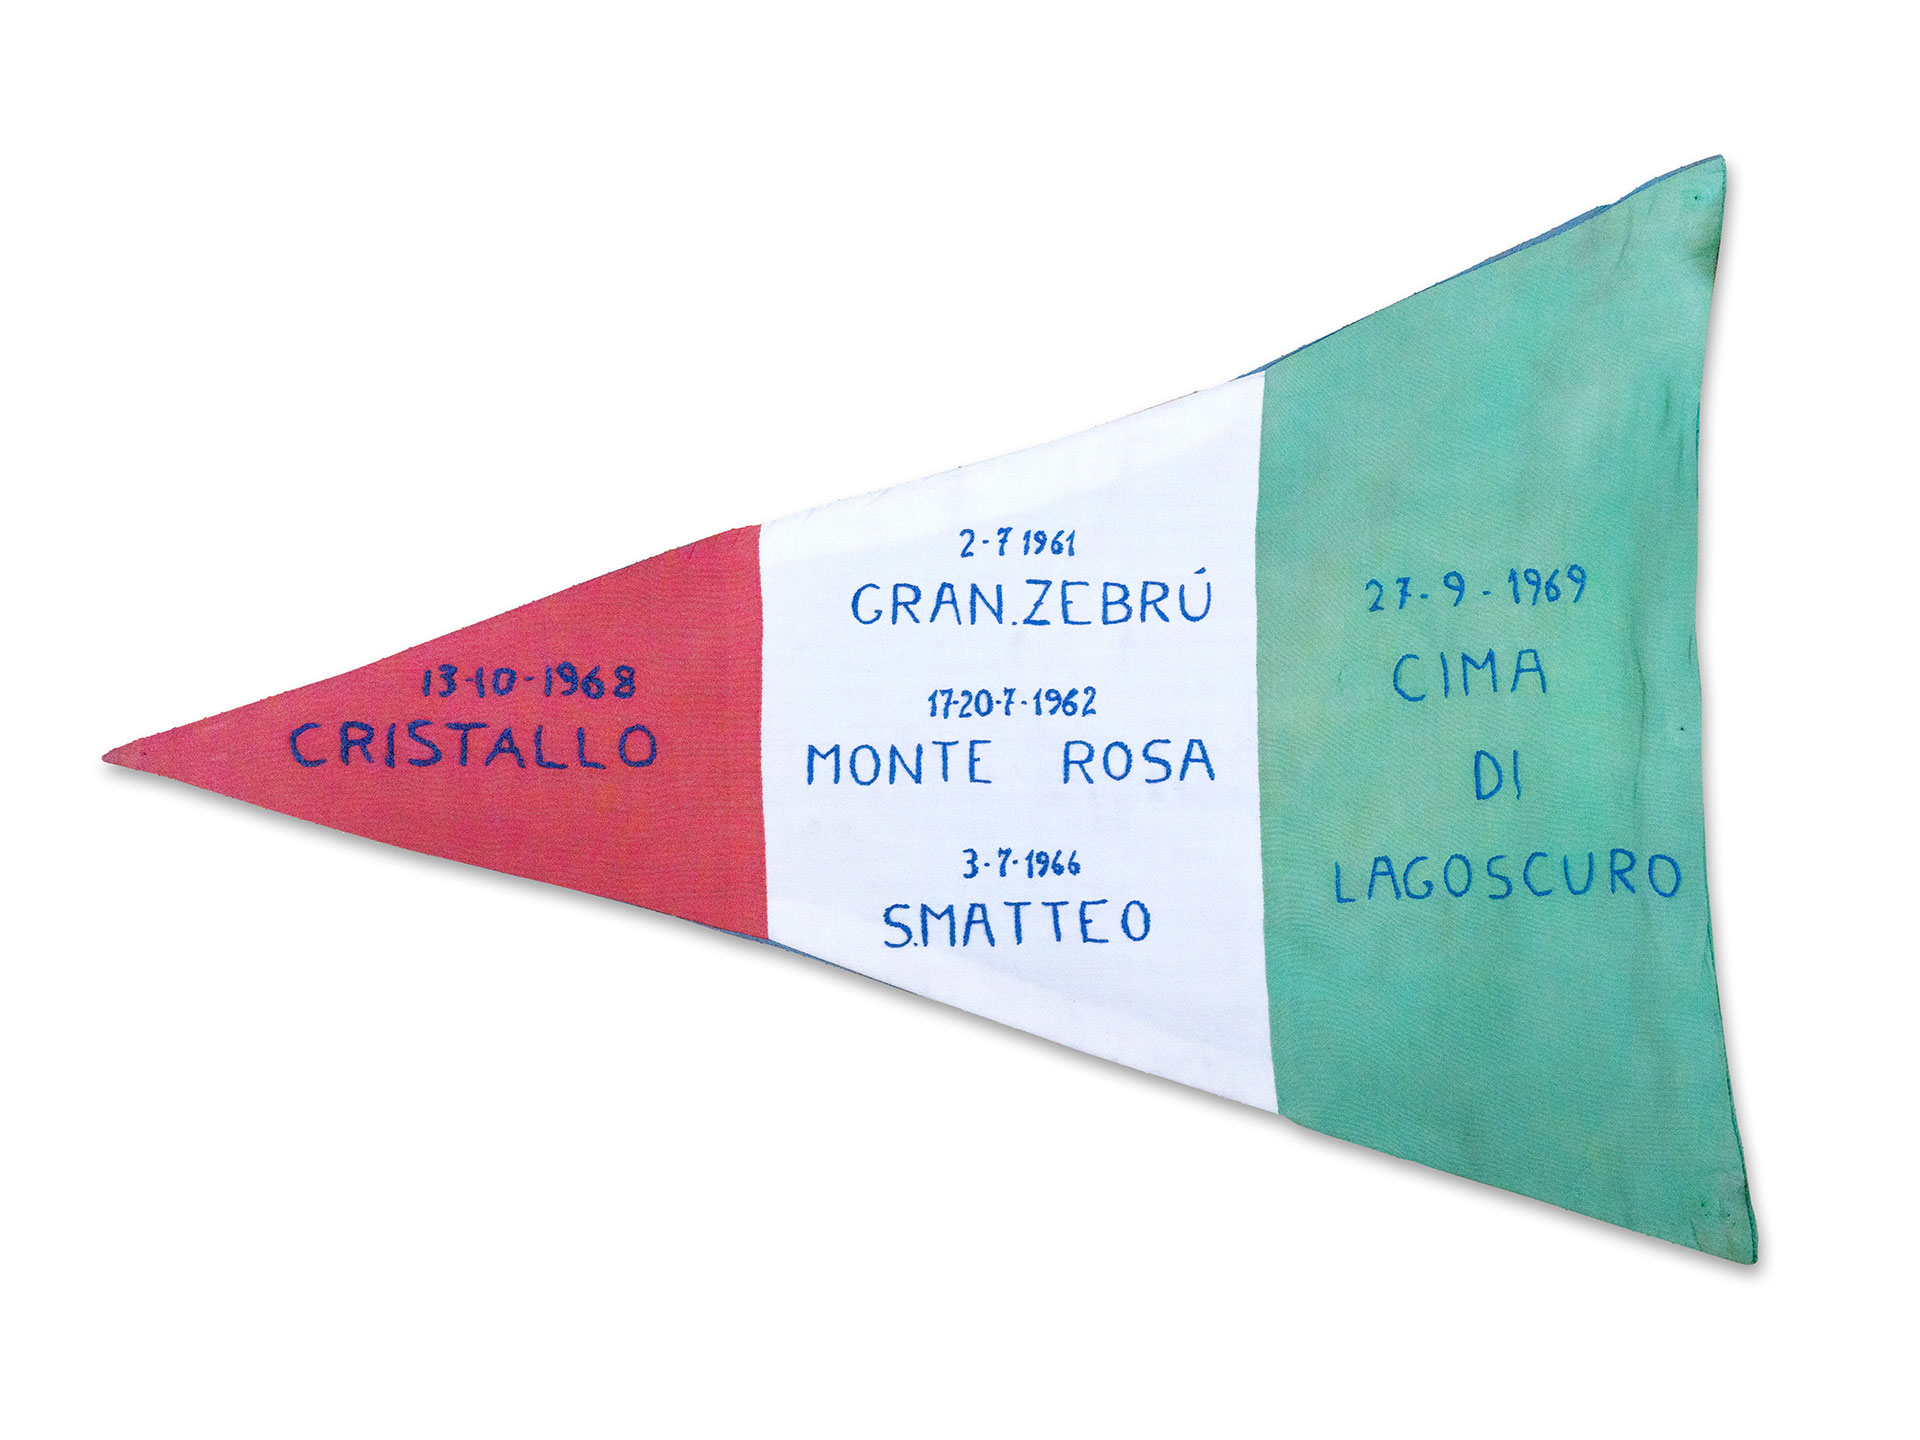 Bandiera portata in vetta durante le ascese realizzate da Mario Testorelli con i suoi scolari